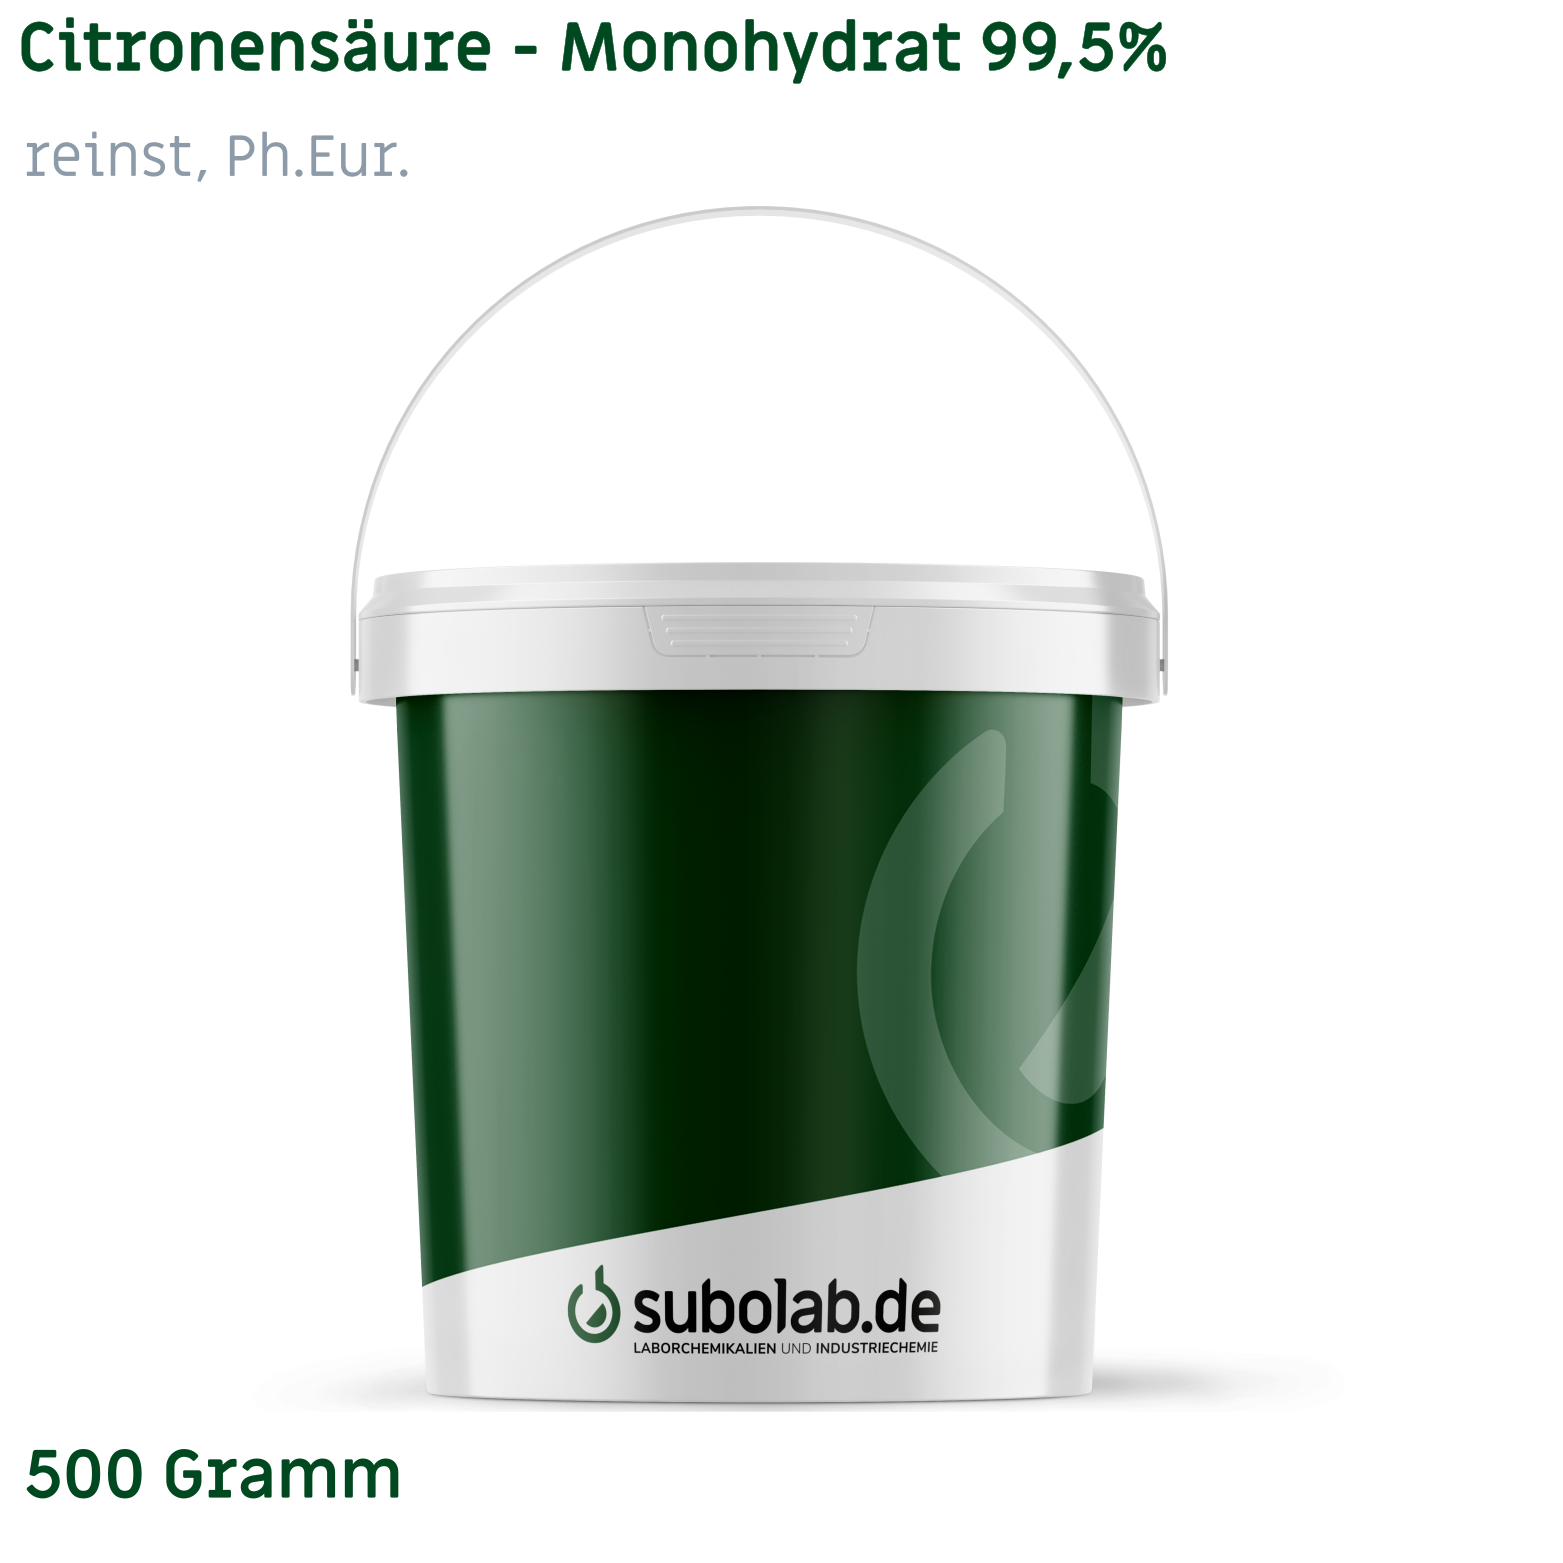 Bild von Citronensäure - Monohydrat 99,5% reinst, Ph.Eur. (500 Gramm)